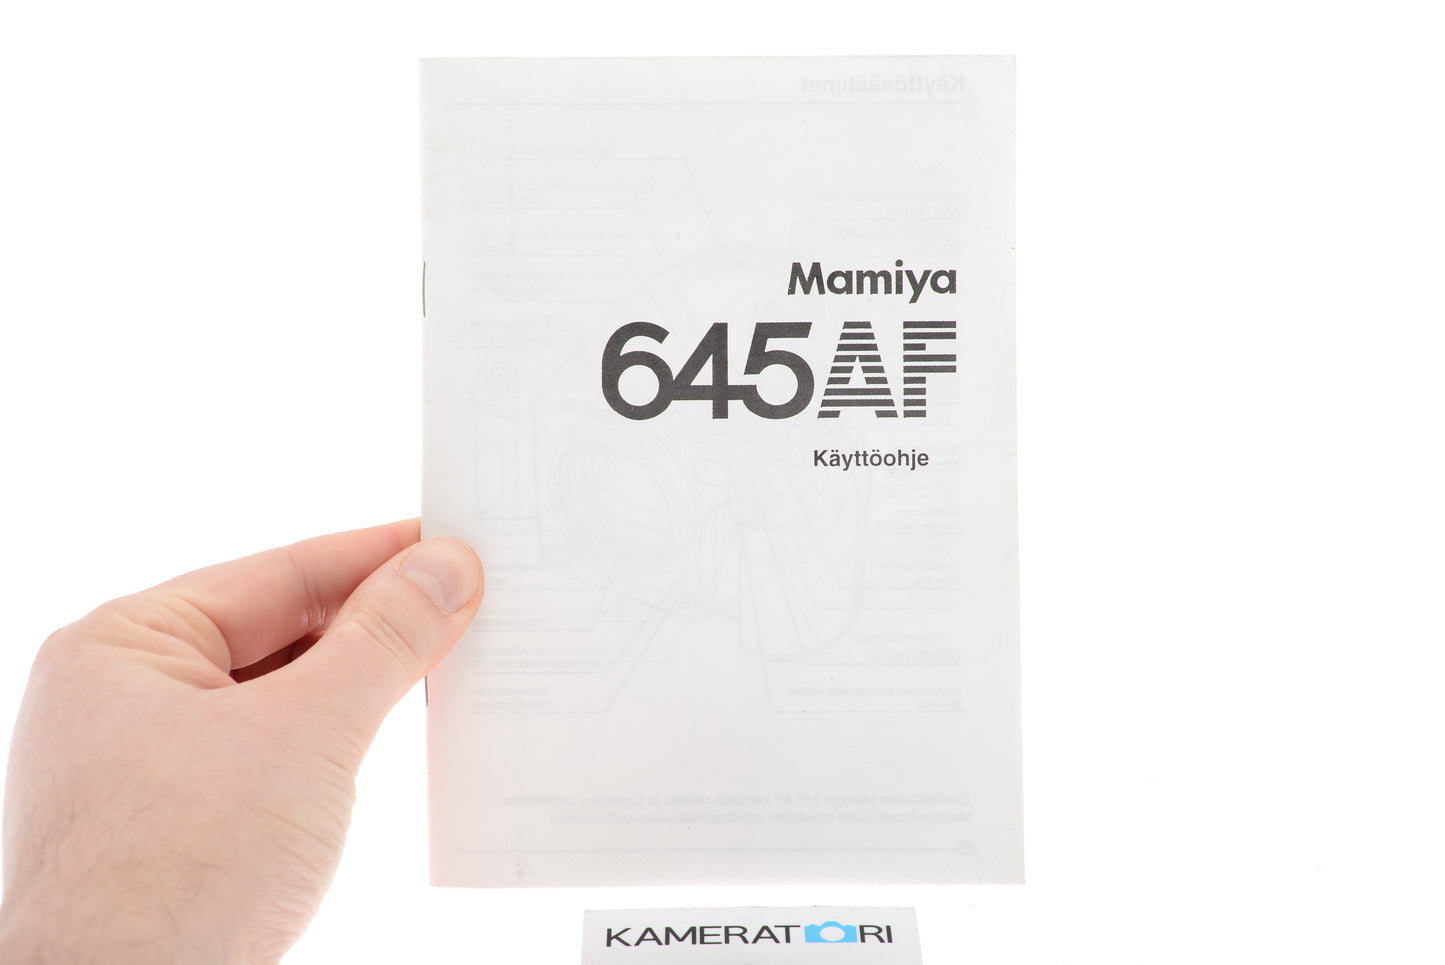 Mamiya 645 AF Instructions